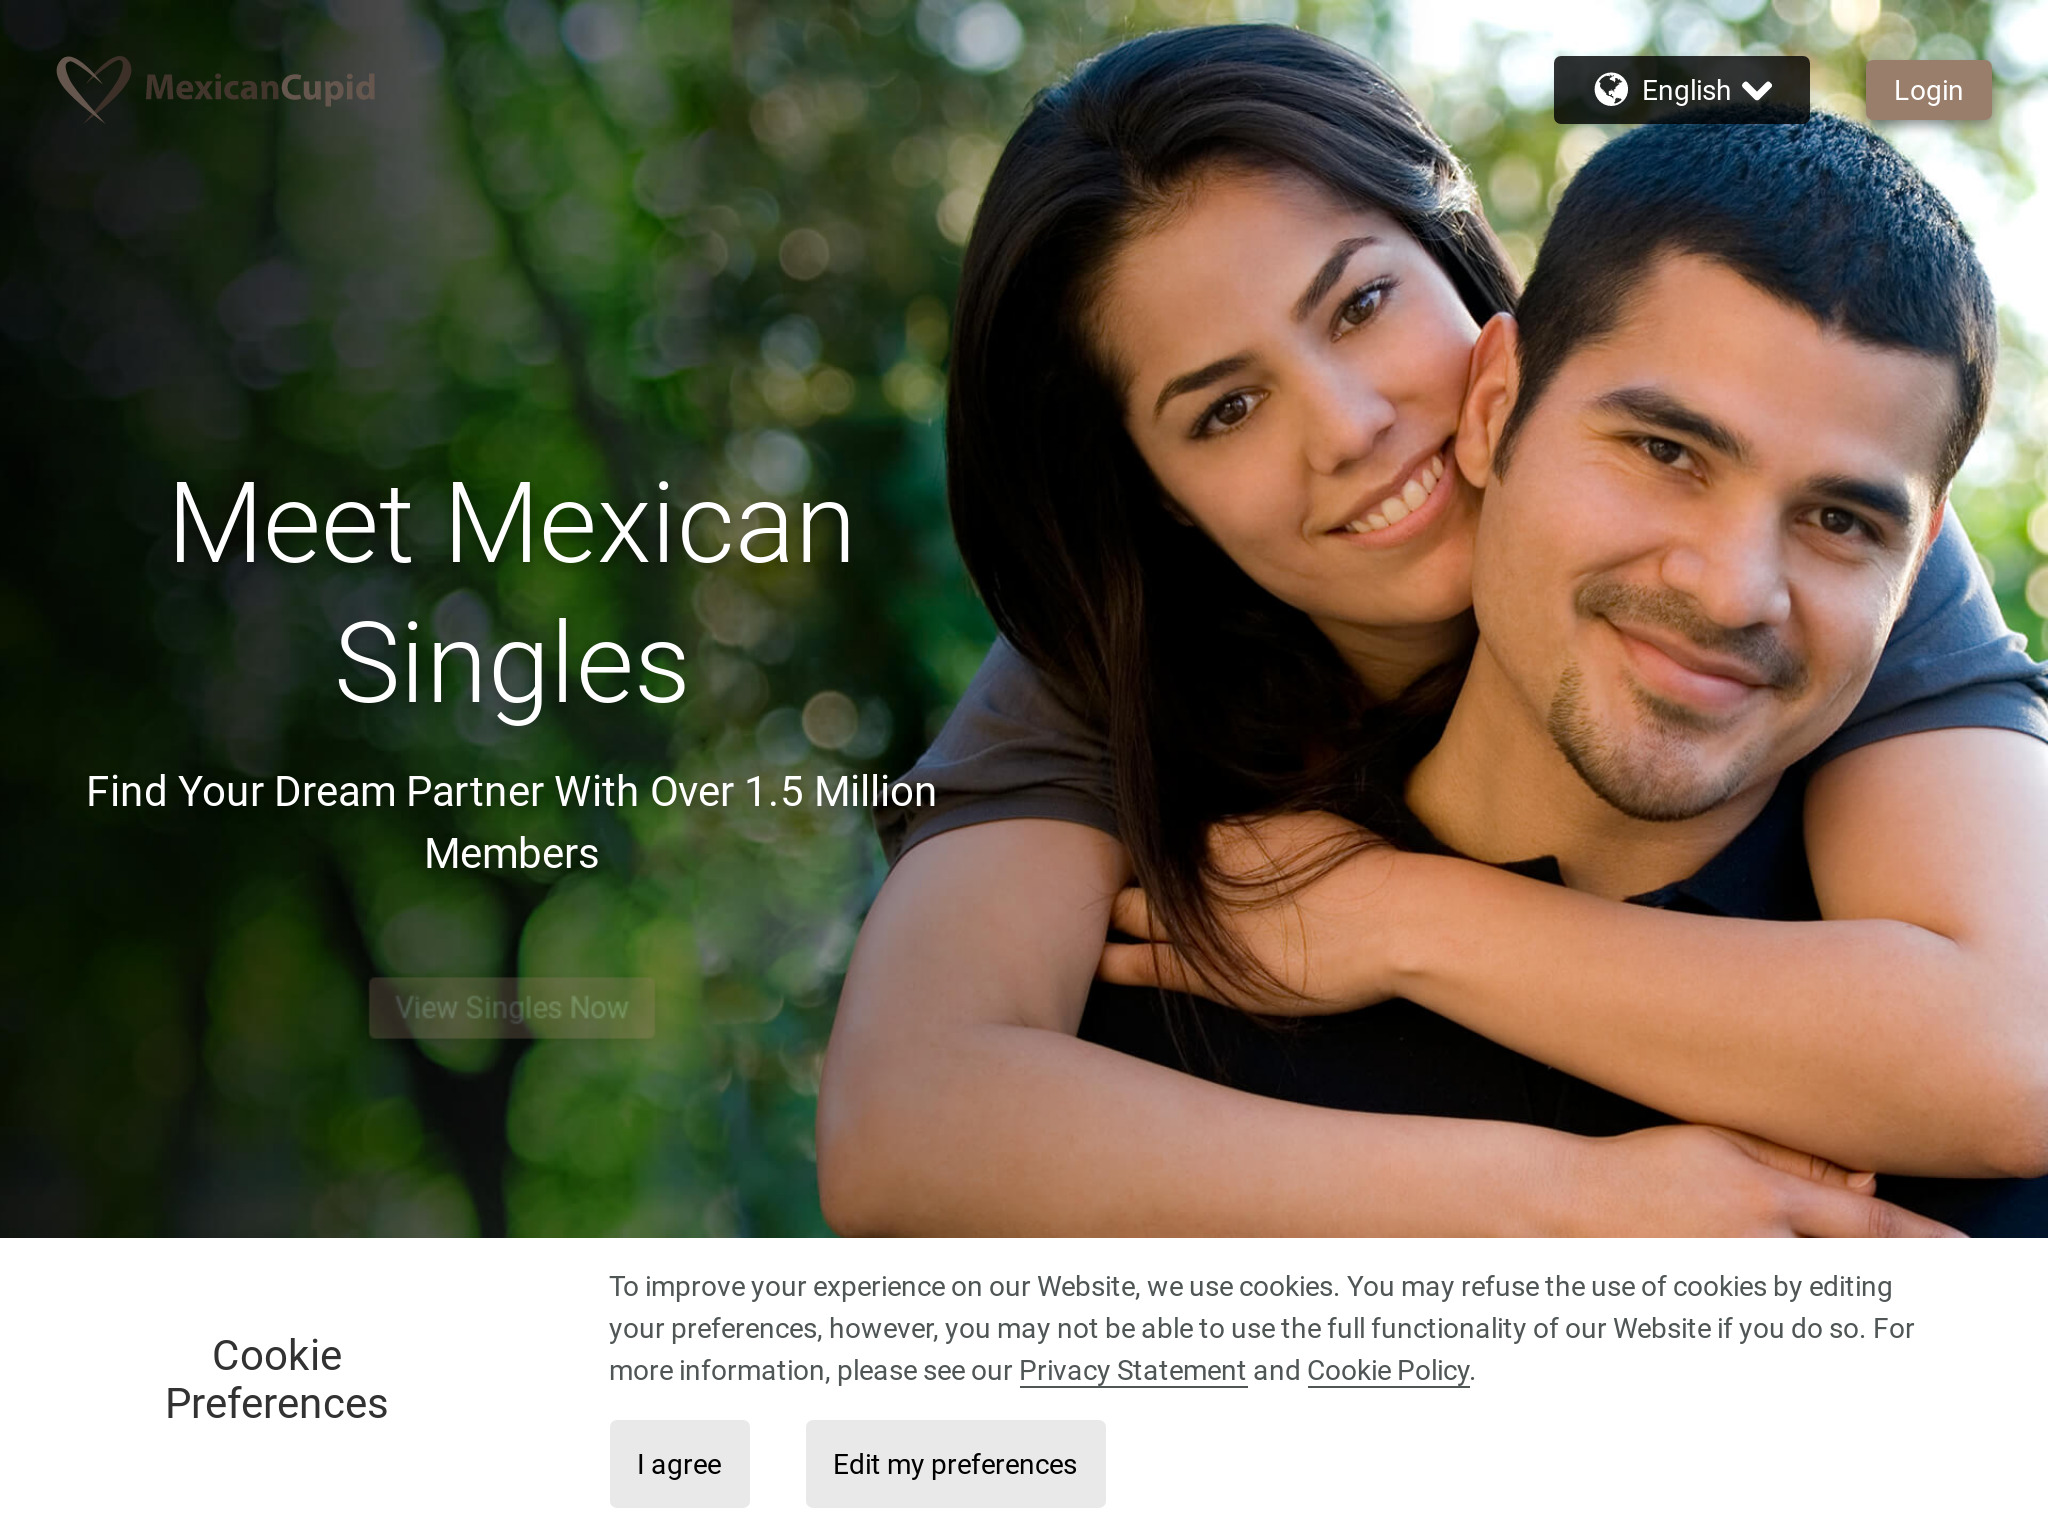 Esplorando il mondo degli appuntamenti online &#8211; Recensione di MexicanСupid